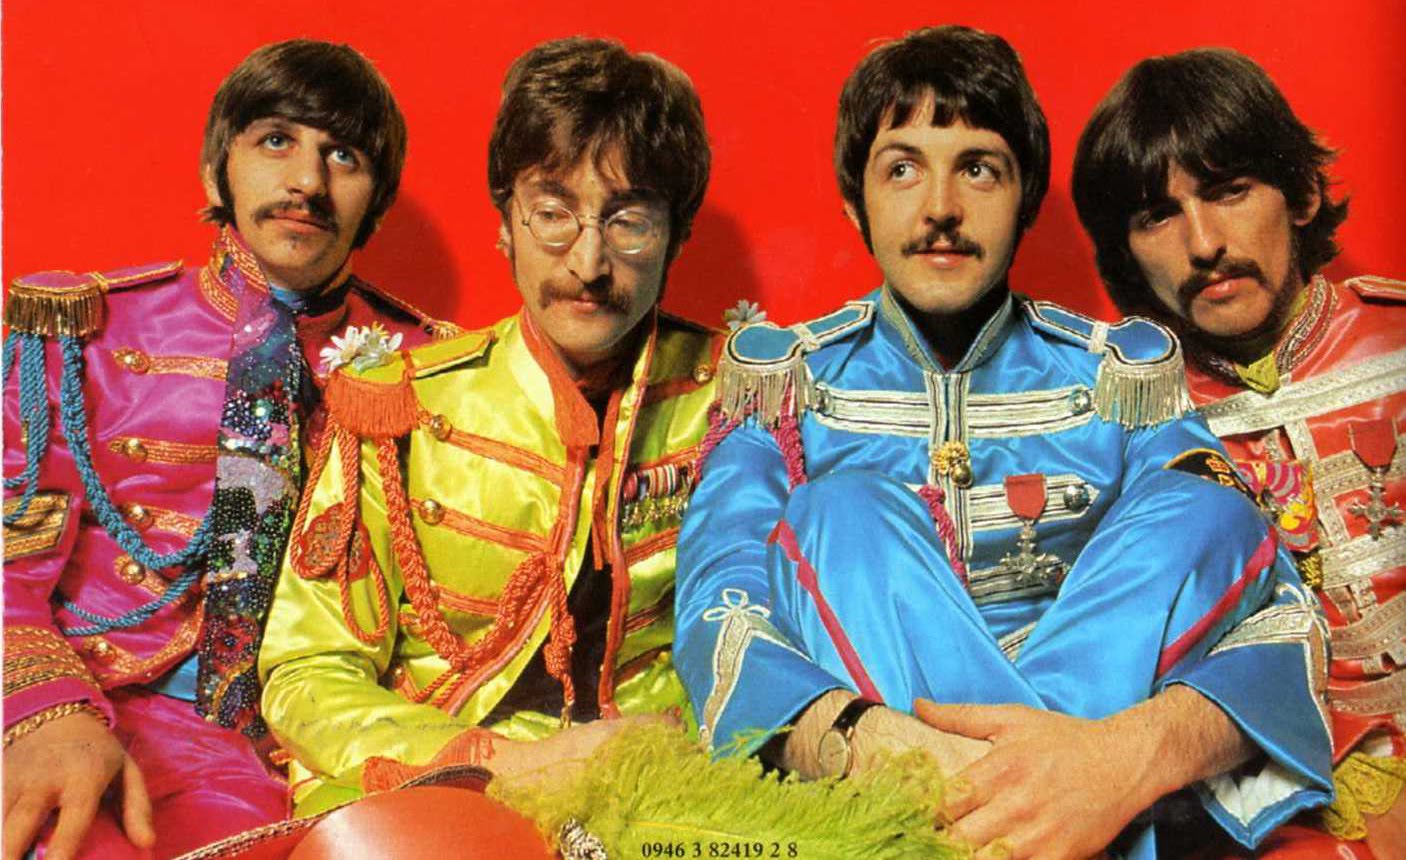 ... blog: Uberías: Nueva portada del Sgt Pepper's Lonely Hearts Club Band